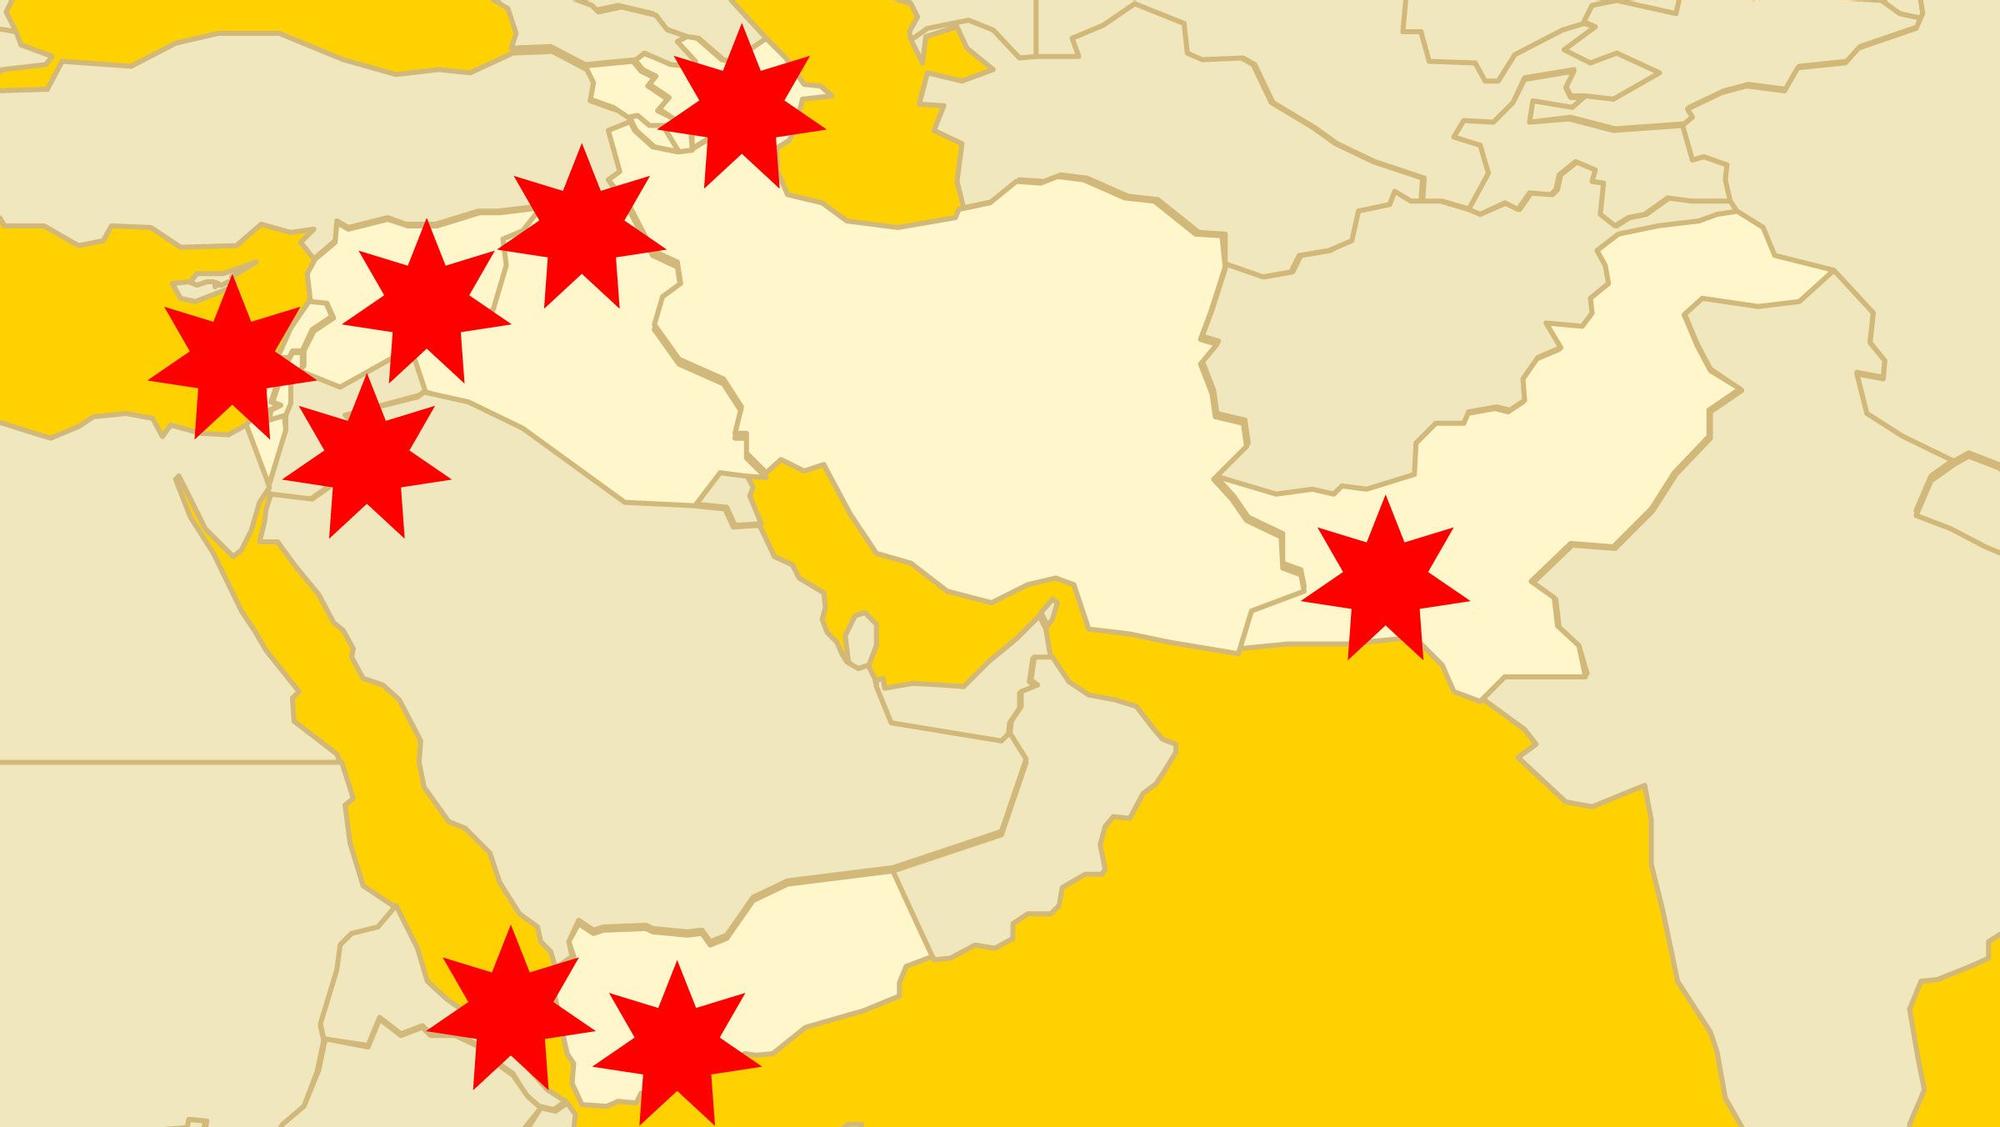 Los 10 conflictos abiertos en Oriente Próximo | Mapa interactivo